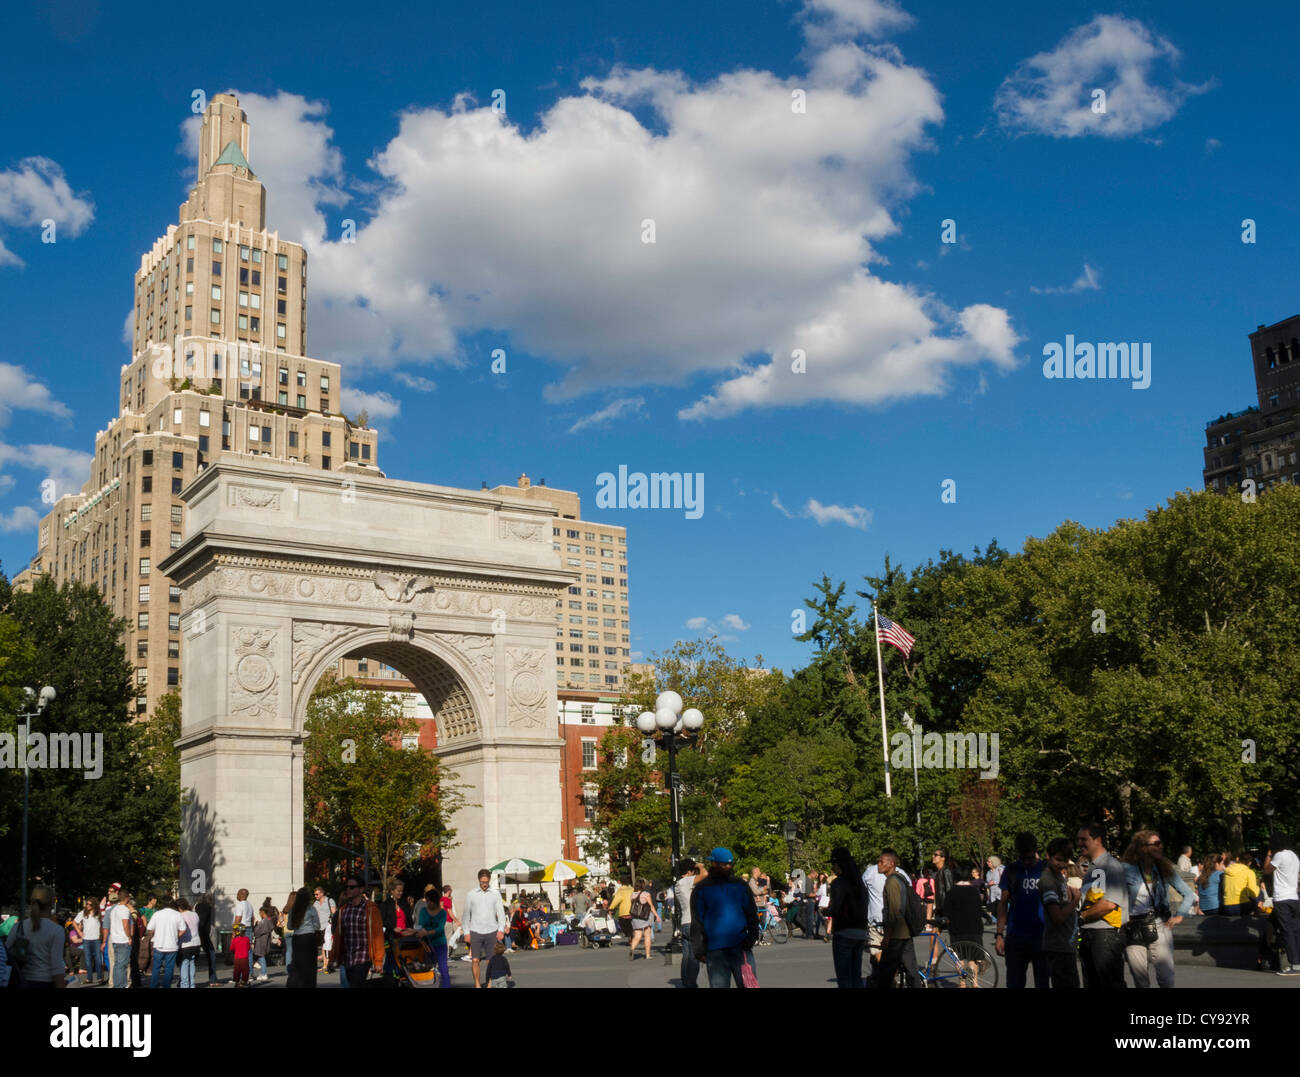 Washington Square Arch et de la foule, Washington Square Park, Greenwich Village, NEW YORK Banque D'Images